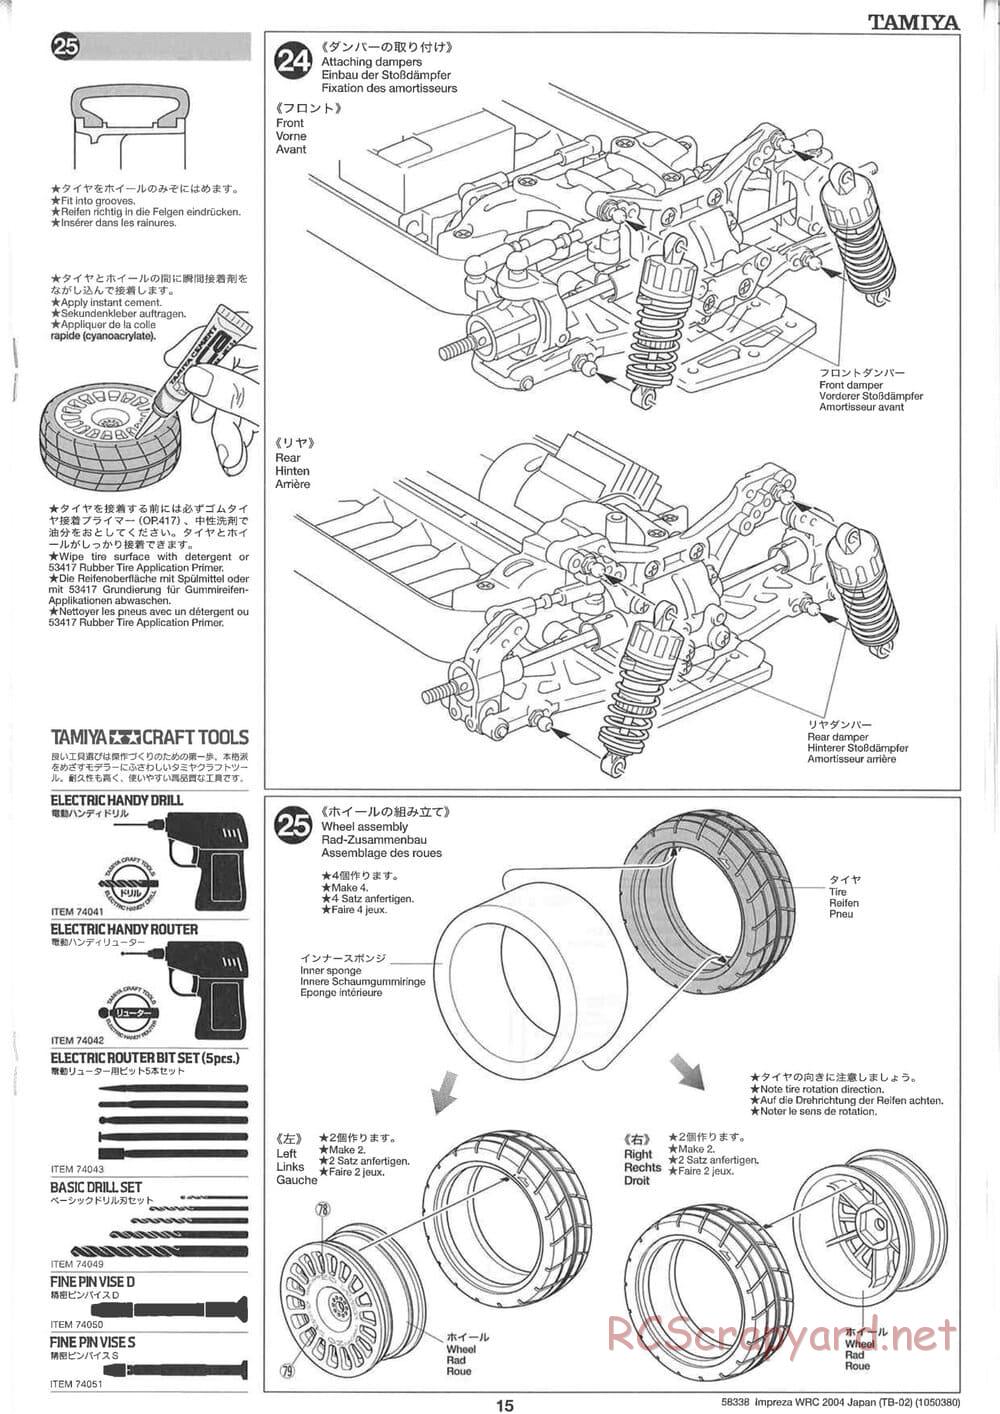 Tamiya - Subaru Impreza WRC 2004 Rally Japan - TB-02 Chassis - Manual - Page 15